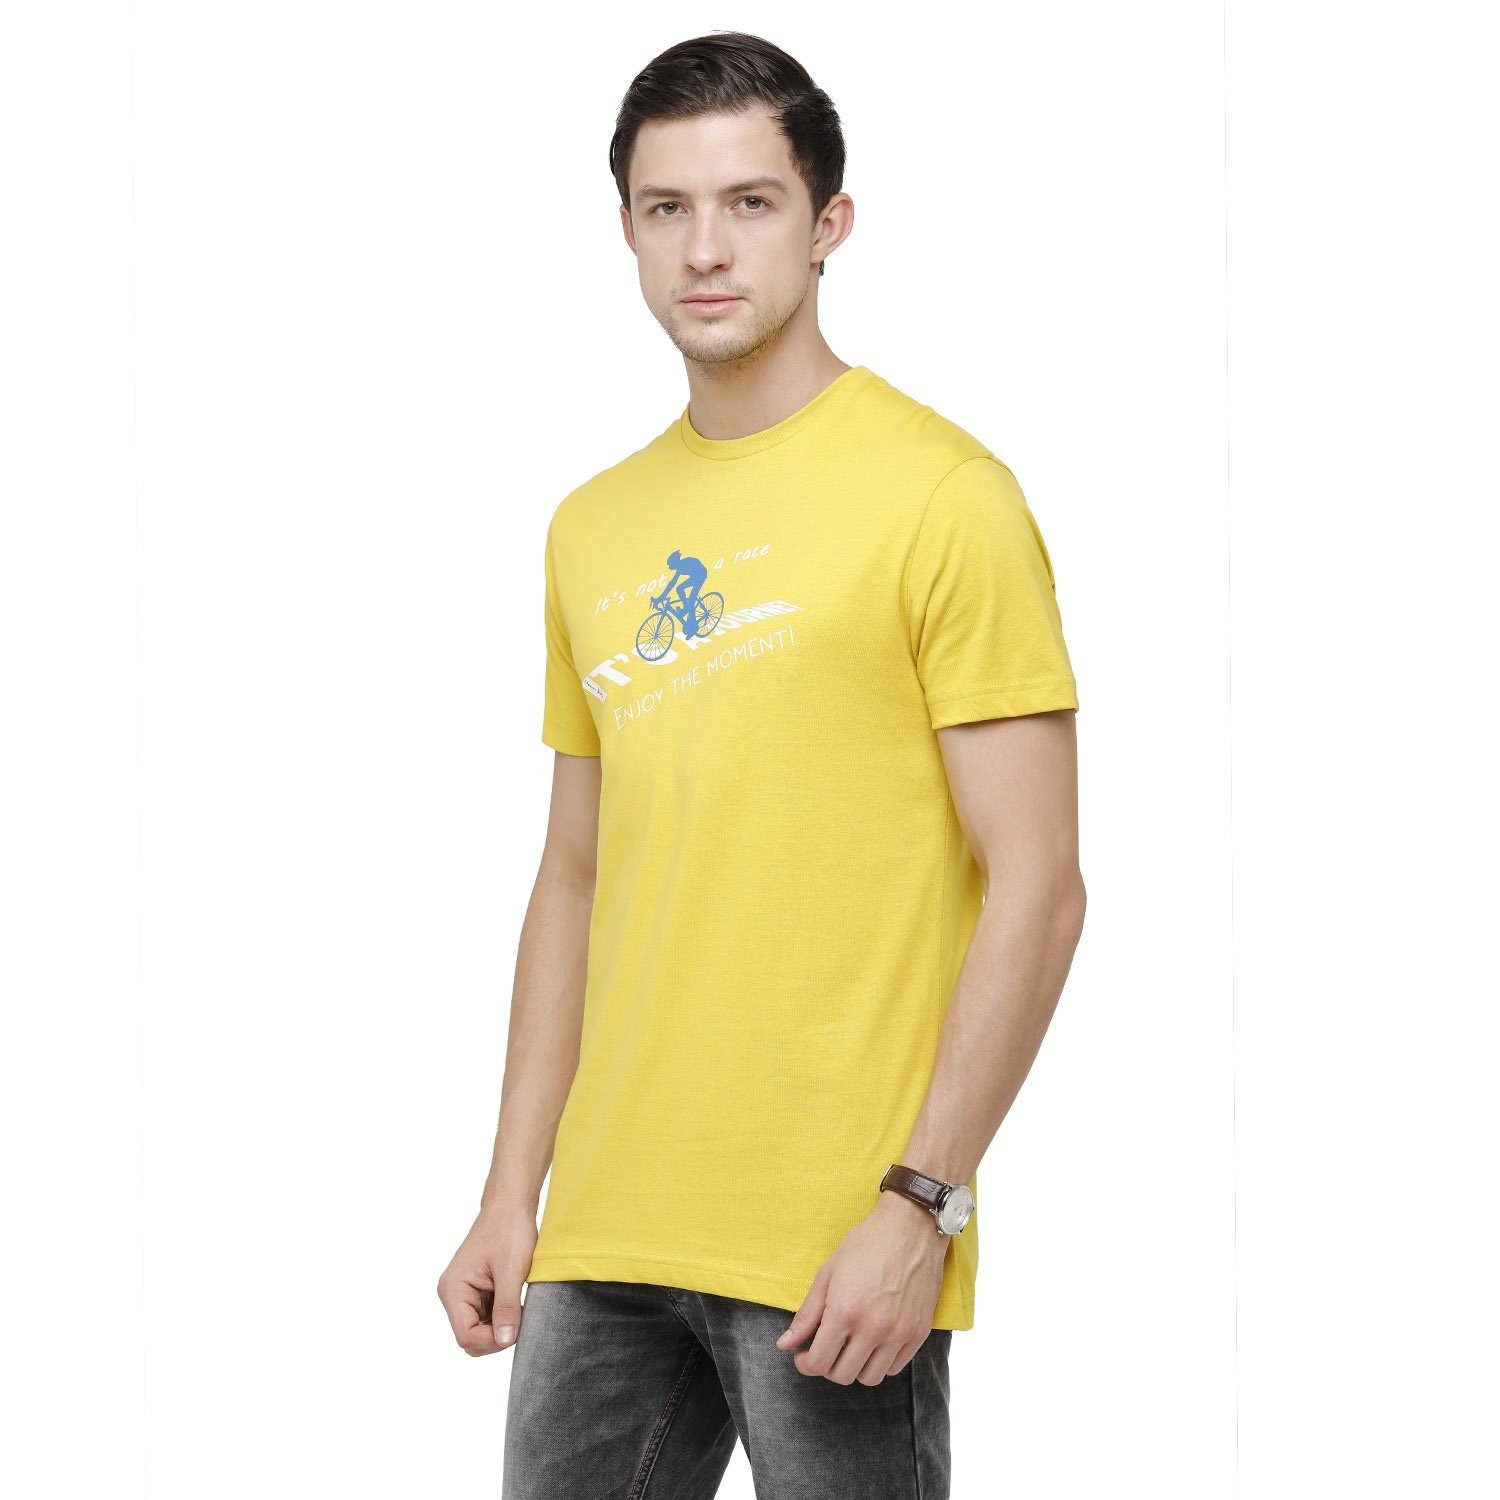 Classic Polo Mens Graphic Print Round Neck Half Sleeve Slim Fit 100% Cotton Lemon Yellow Fashion T-Shirt ( BALENO - 385 B SF C ) T-shirt Classic Polo 